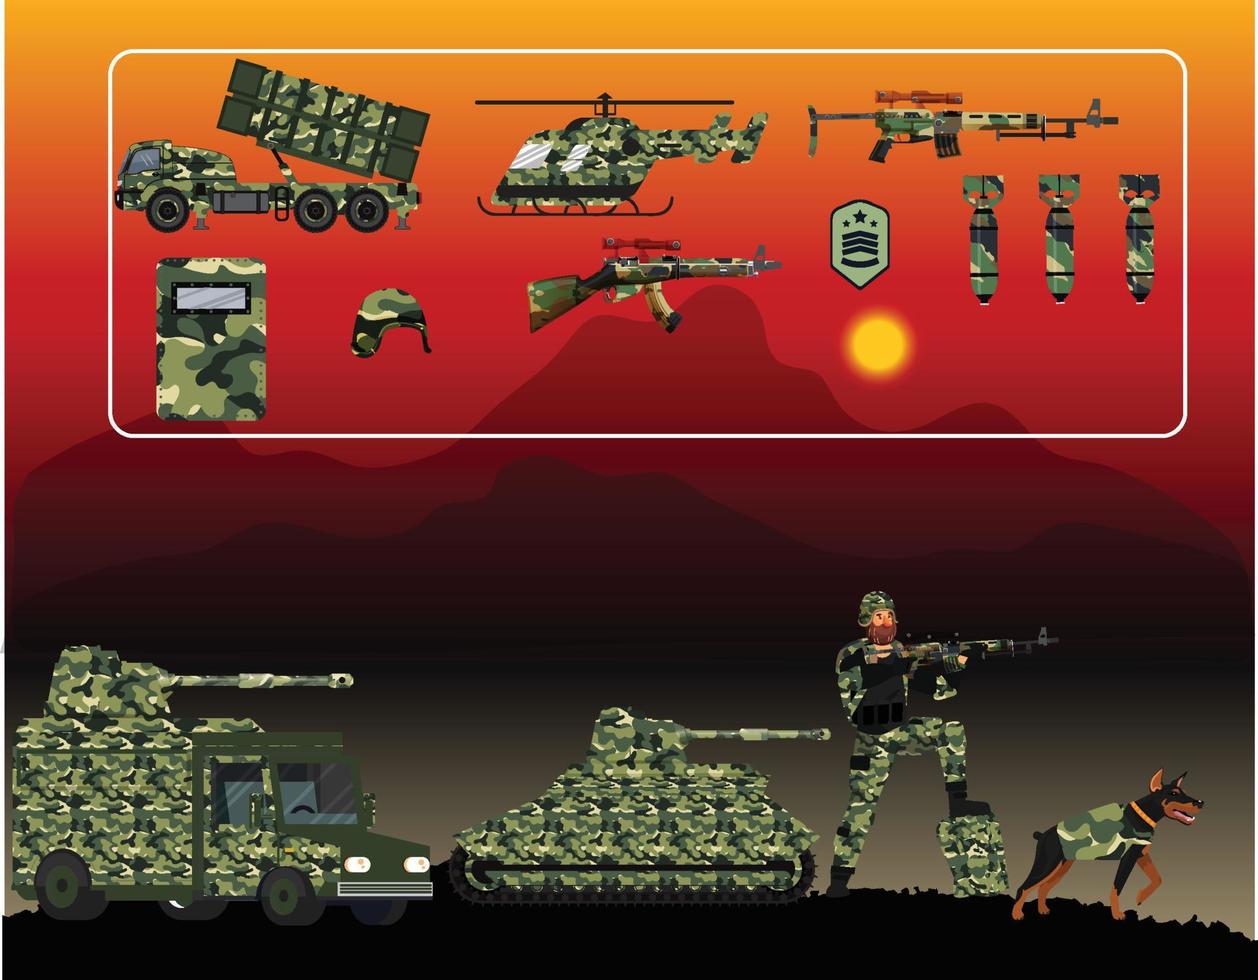 illustrazioni militari di soldati e armi diverse vettore